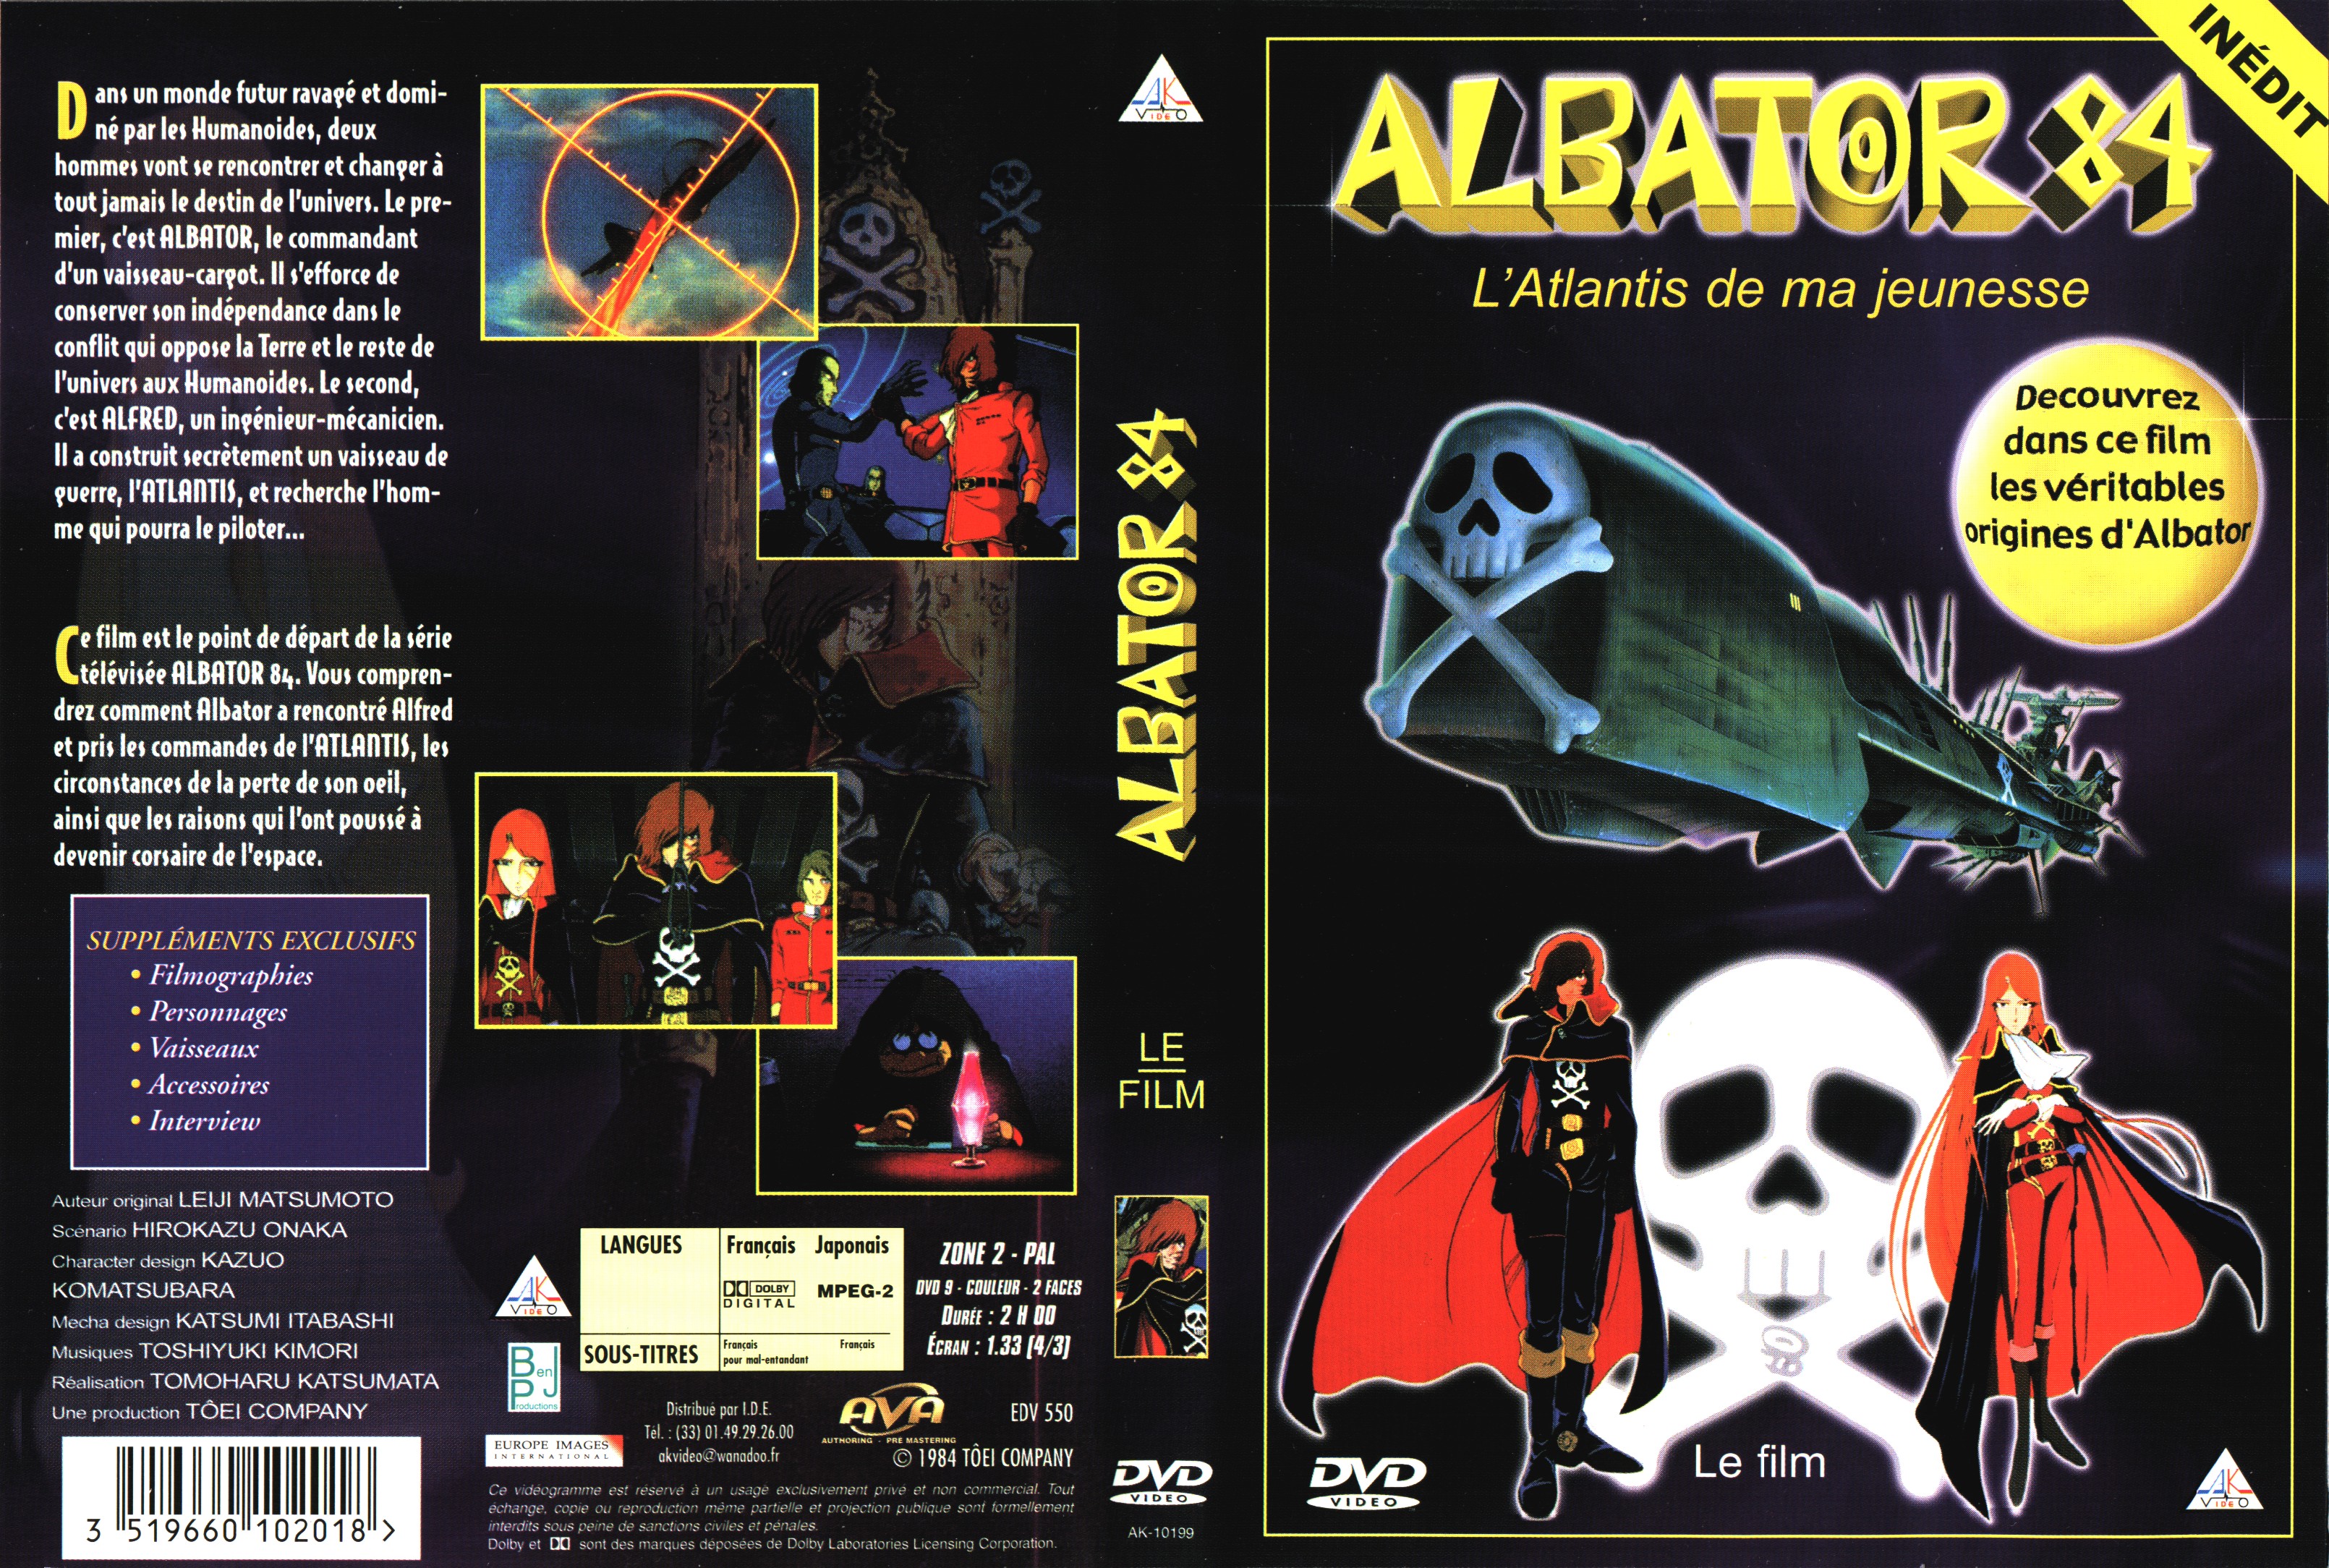 Jaquette DVD Albator 84 le film